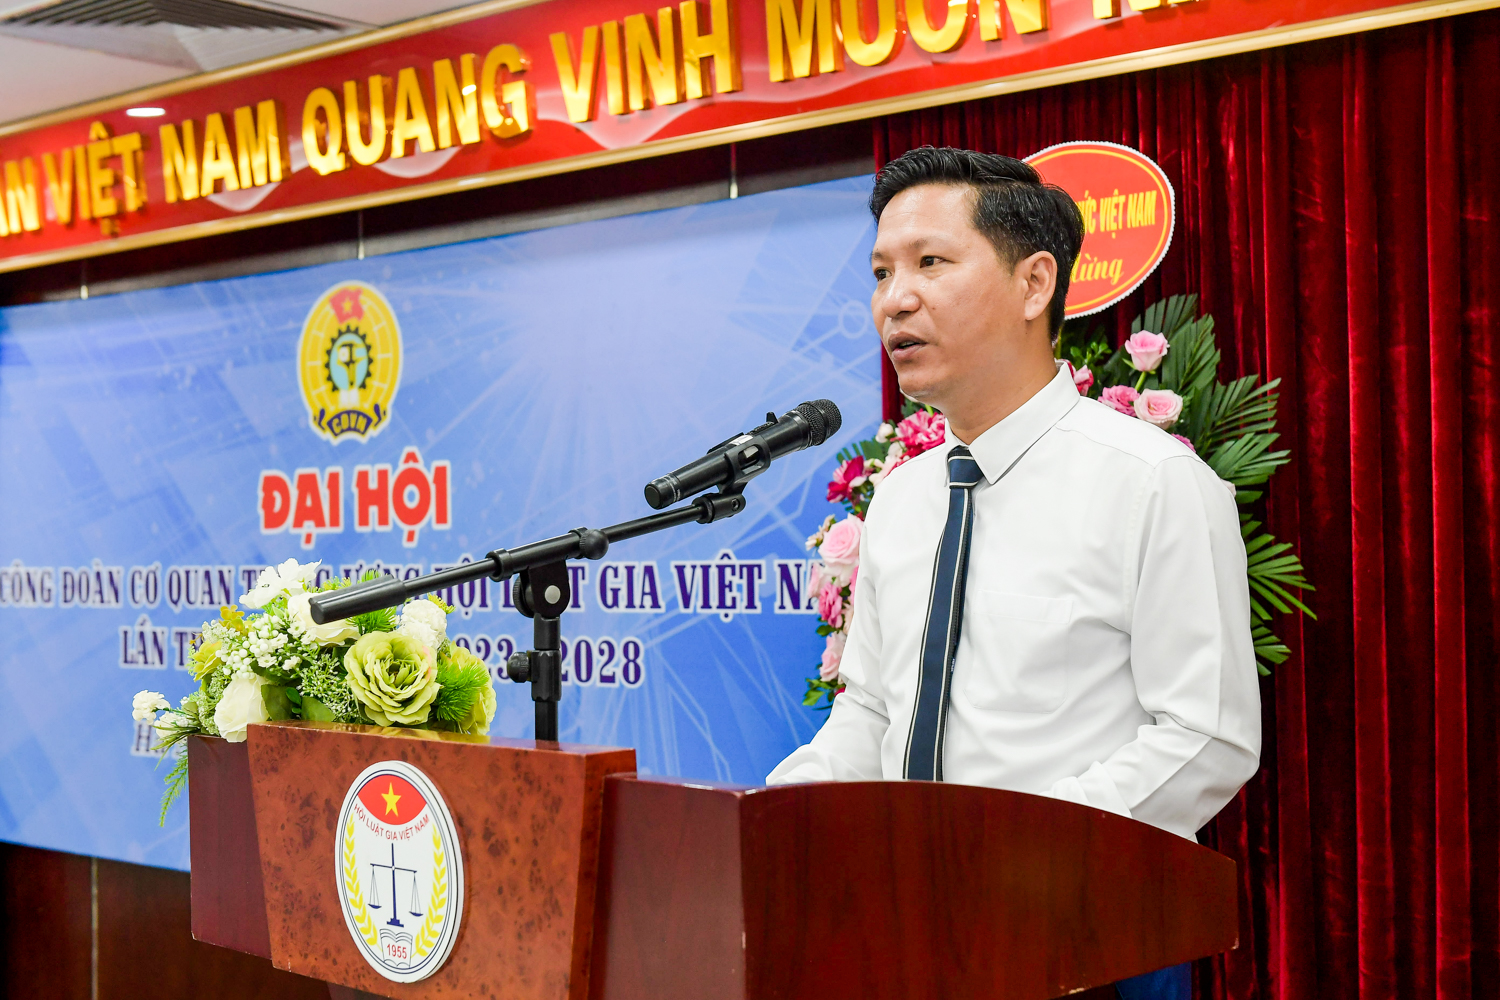 Đại hội công đoàn cơ quan Trung ương Hội Luật gia Việt Nam lần thứ VI